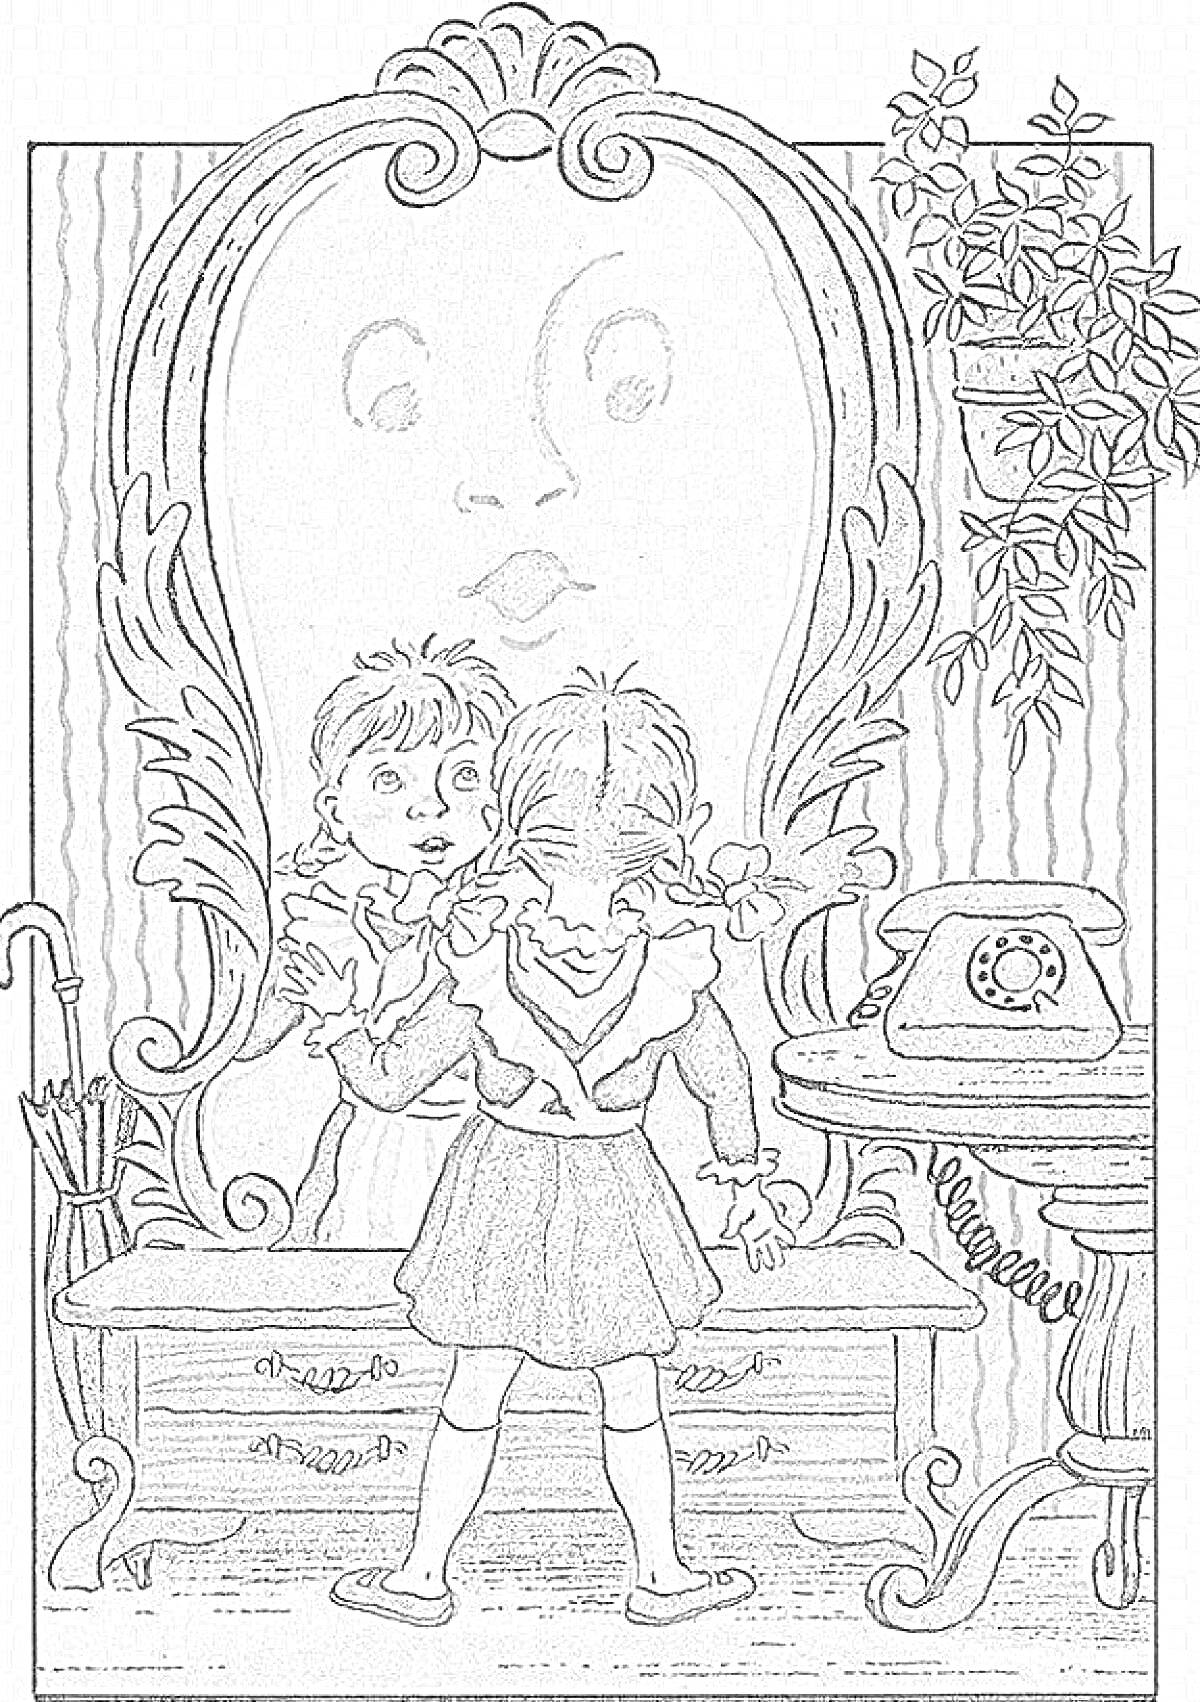 На раскраске изображено: Зеркало, Девочка, Мальчик, Стол, Трость, Мебель, Растения, Изображение для раскрашивания